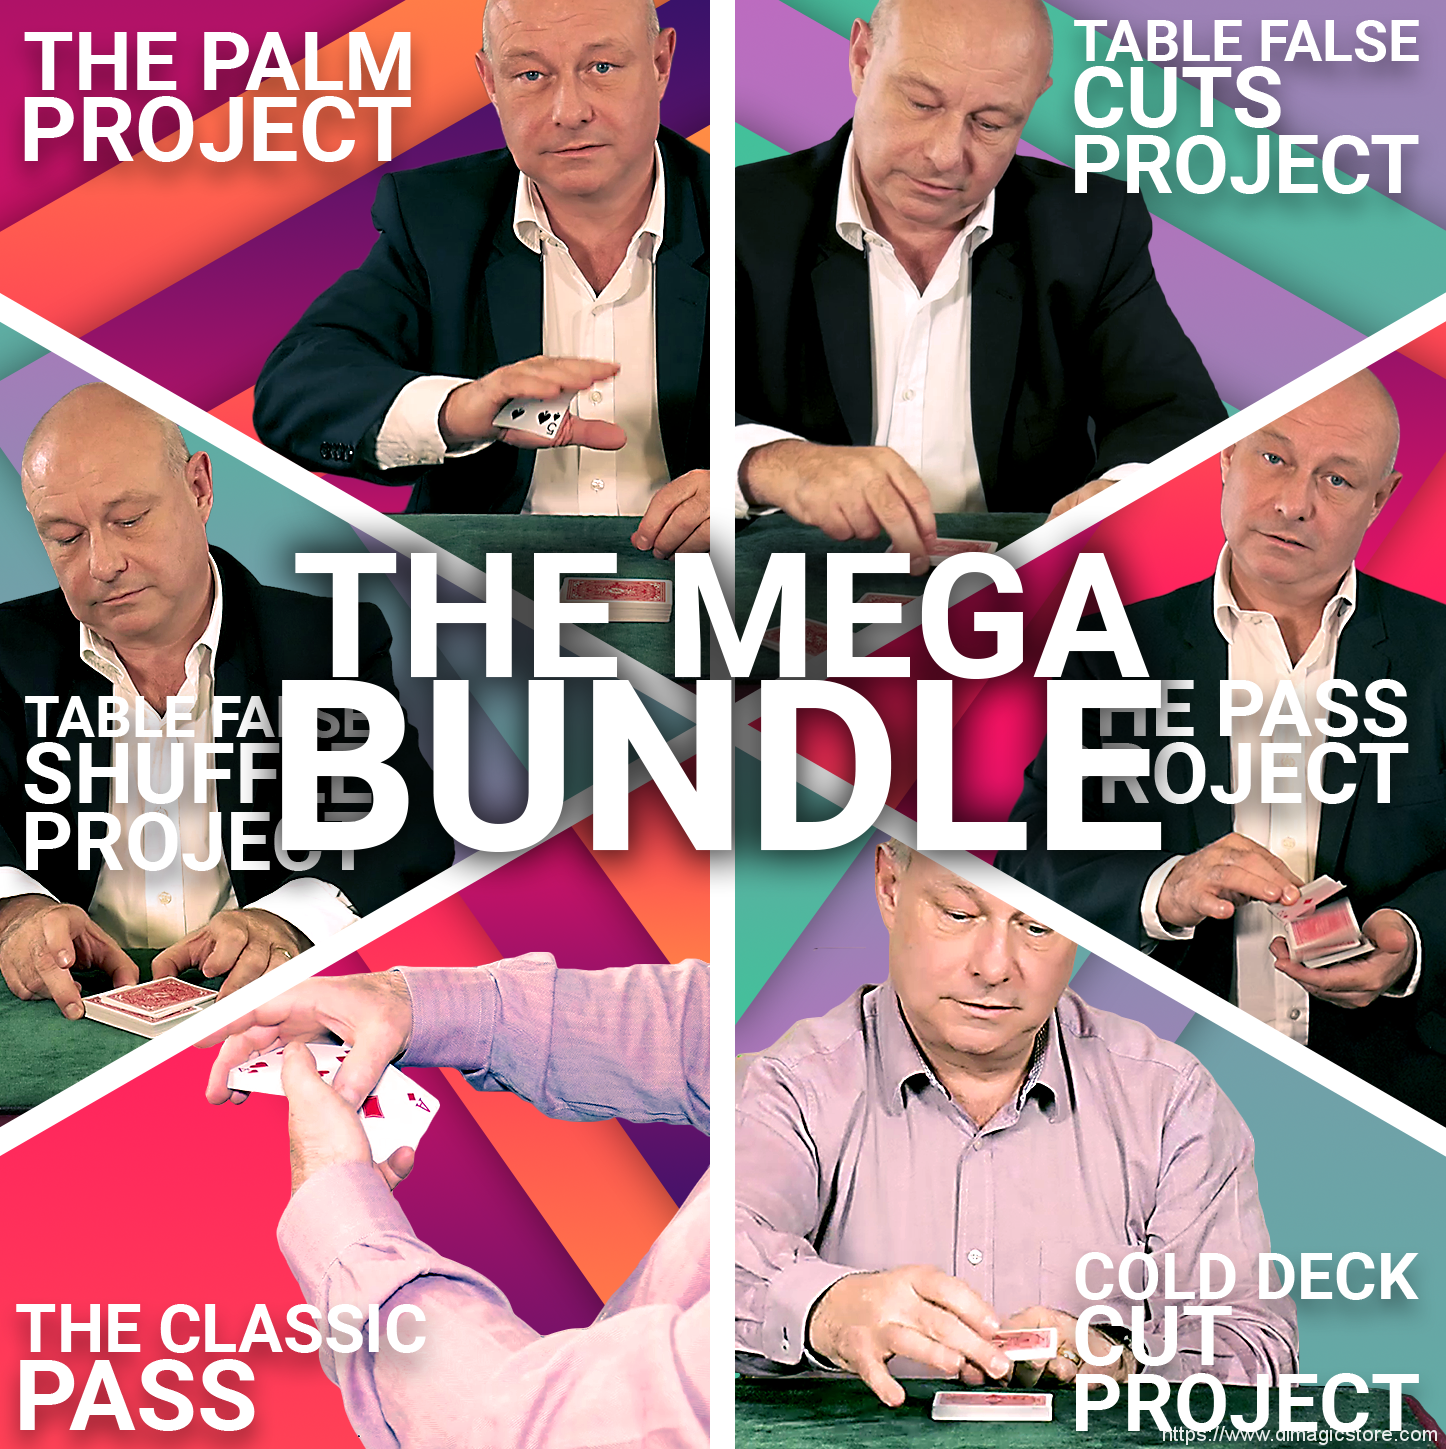 Eddie McColl – The Mega Bundle